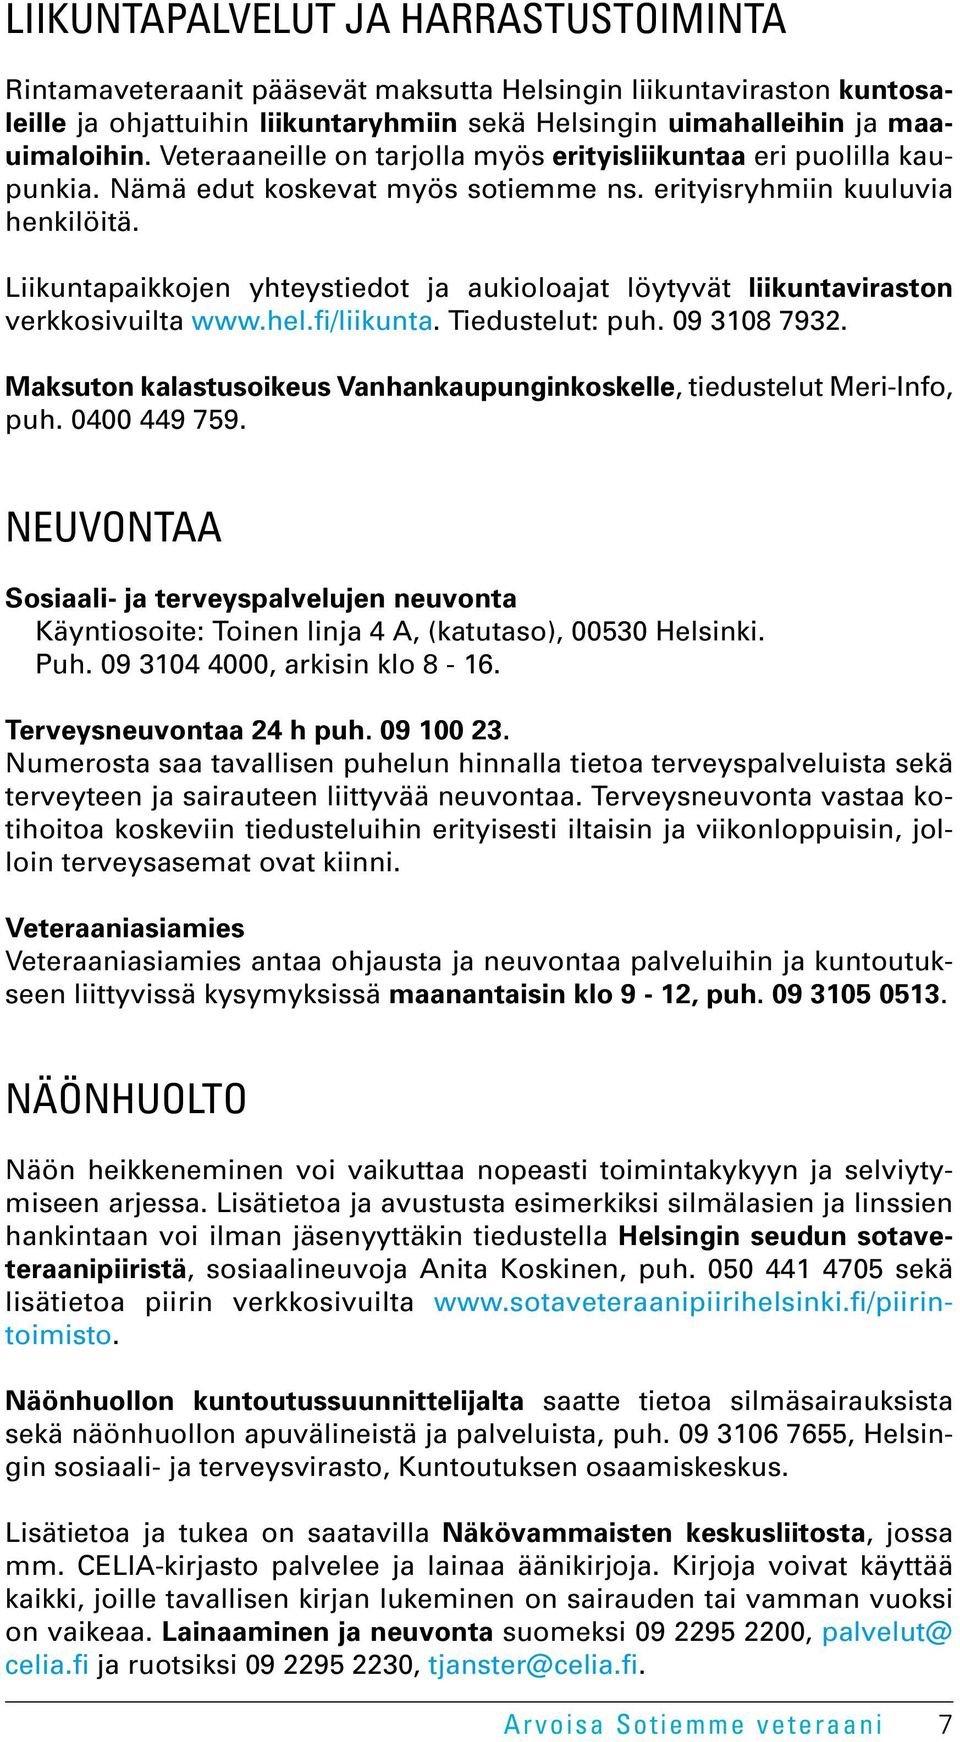 Liikuntapaikkojen yhteystiedot ja aukioloajat löytyvät liikuntaviraston verkkosivuilta www.hel.fi/liikunta. Tiedustelut: puh. 09 3108 7932.